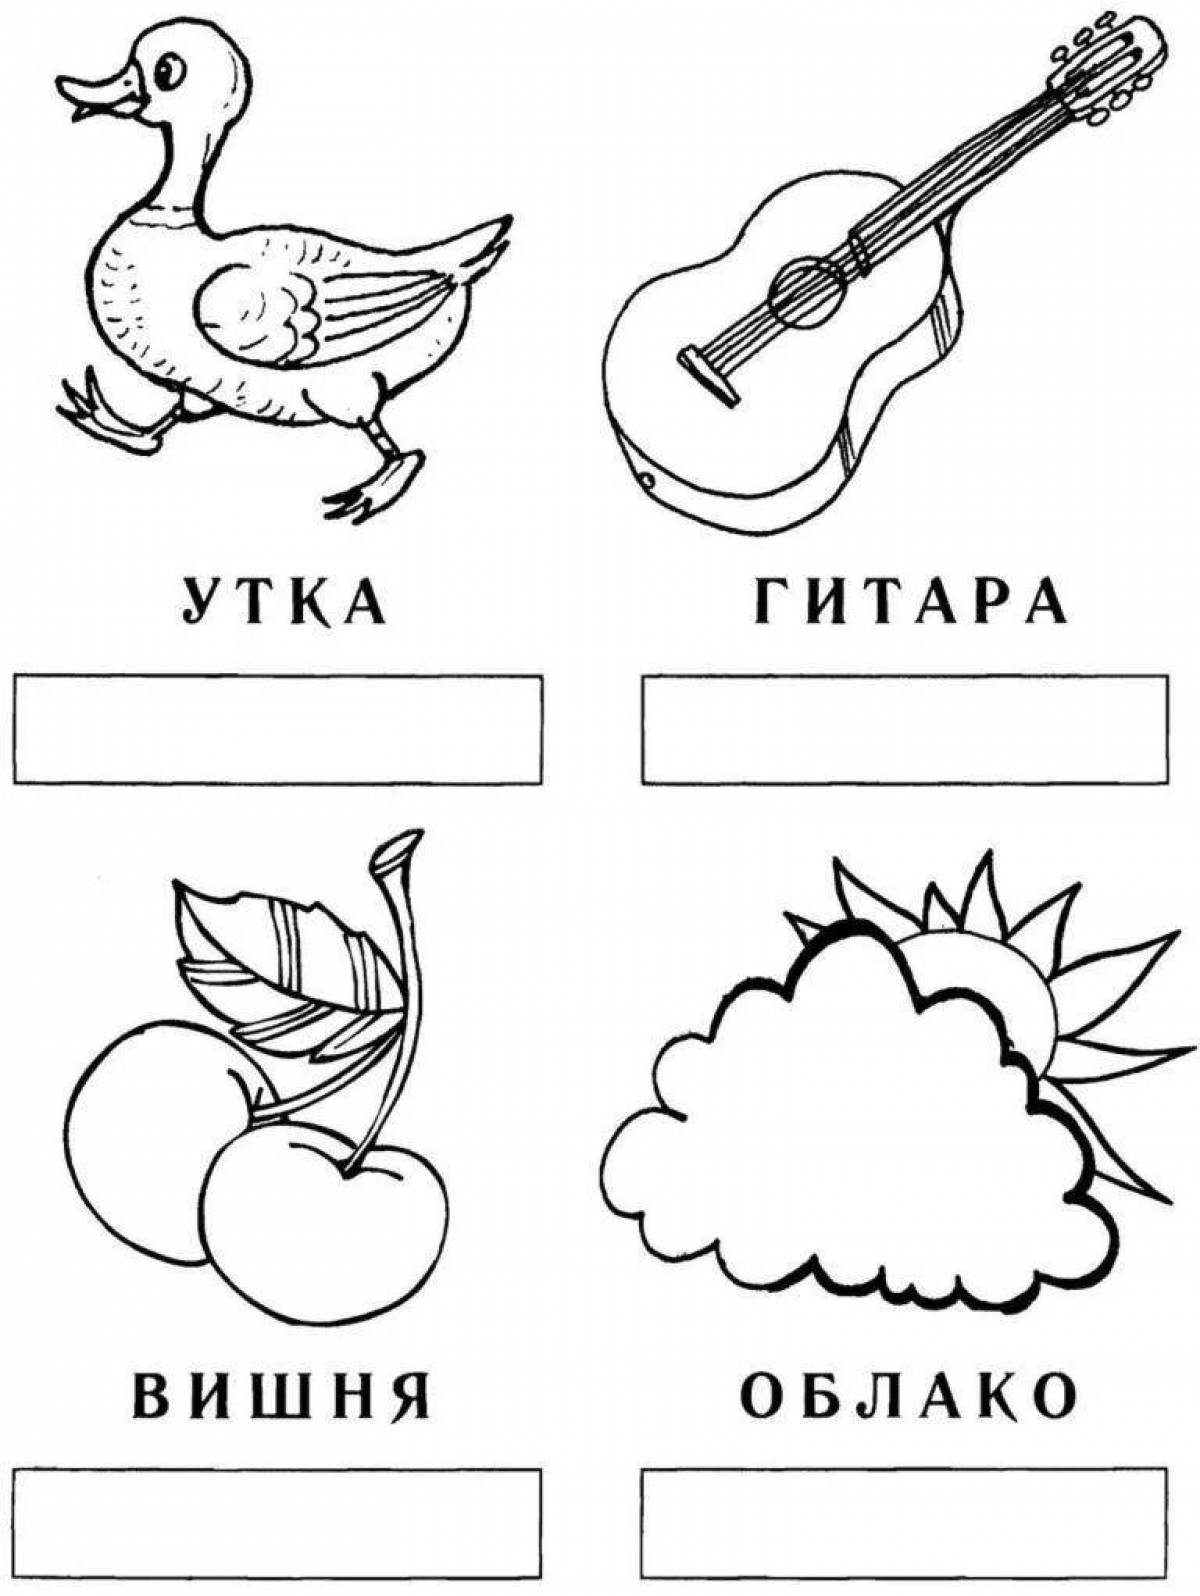 Звуки и буквы 1 класс русский карточка